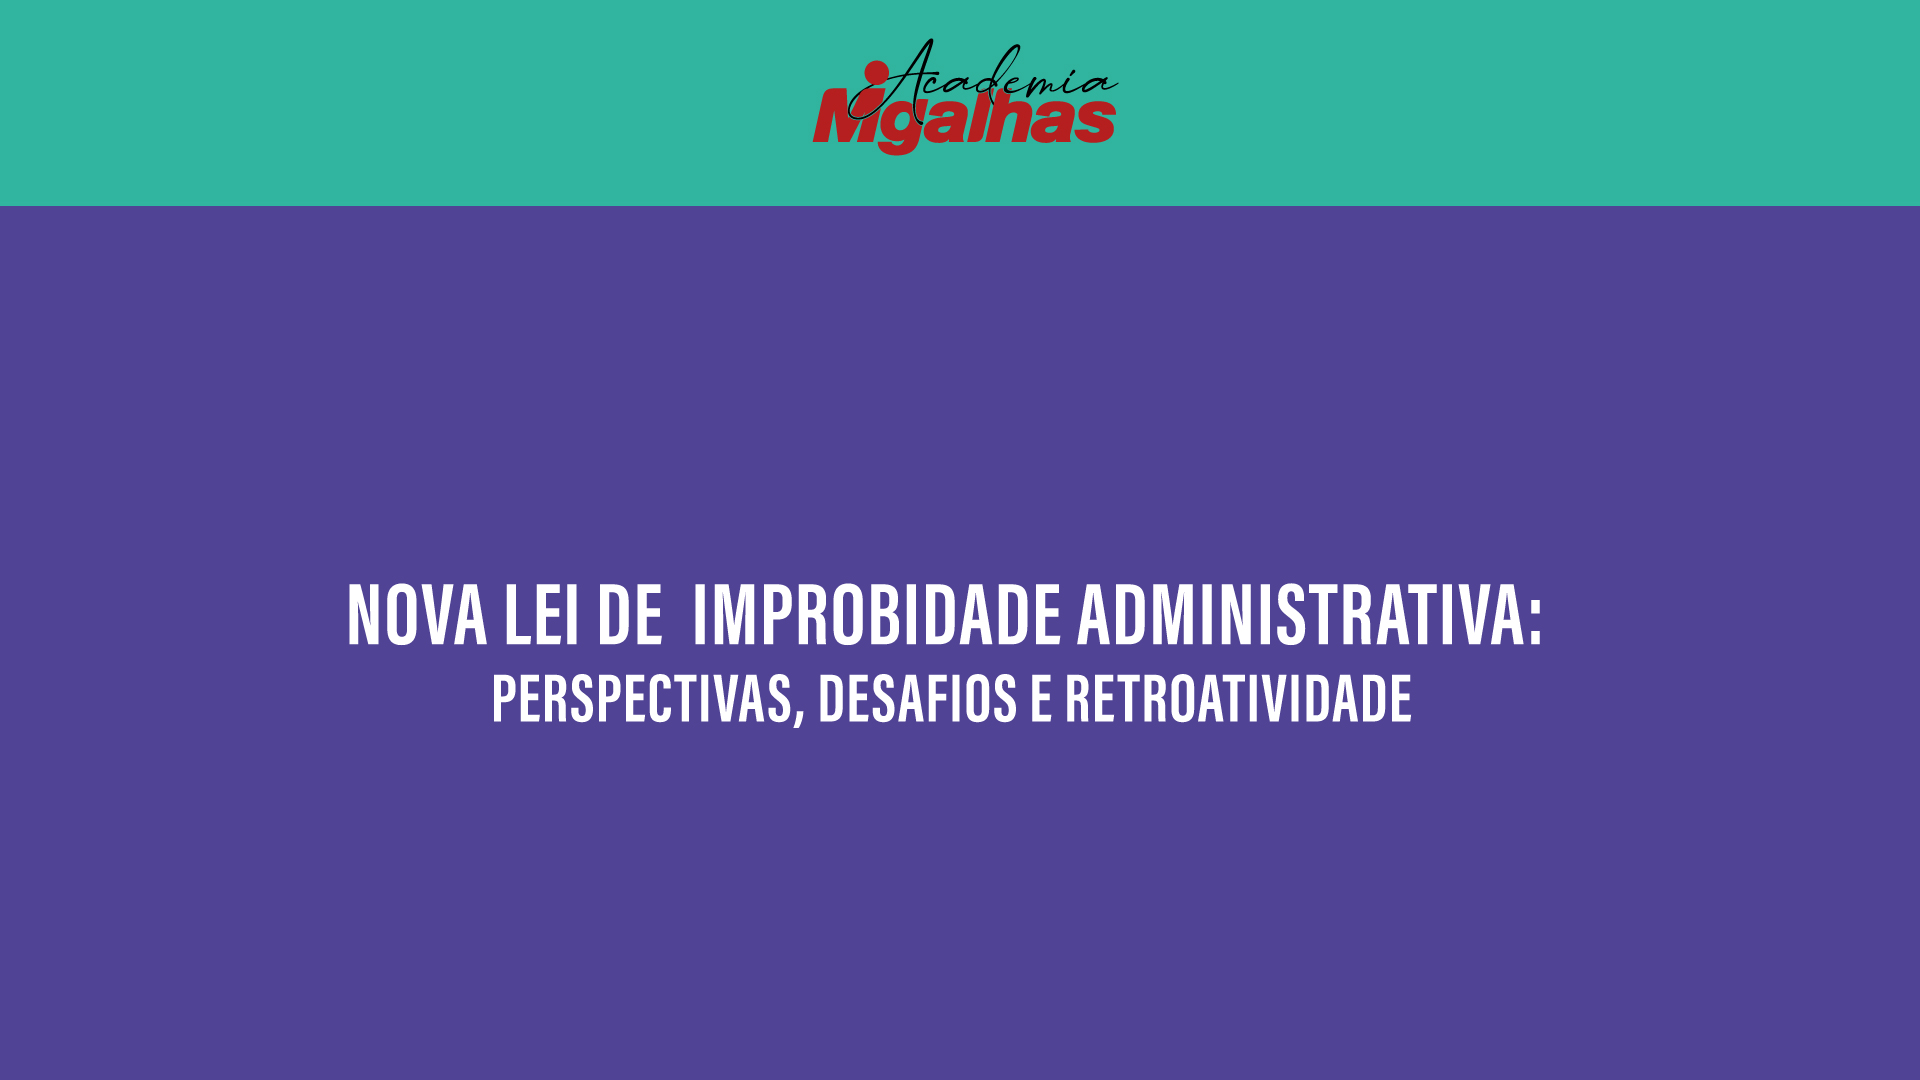 Nova Lei de Improbidade Administrativa: Perspectivas, desafios e retroatividade